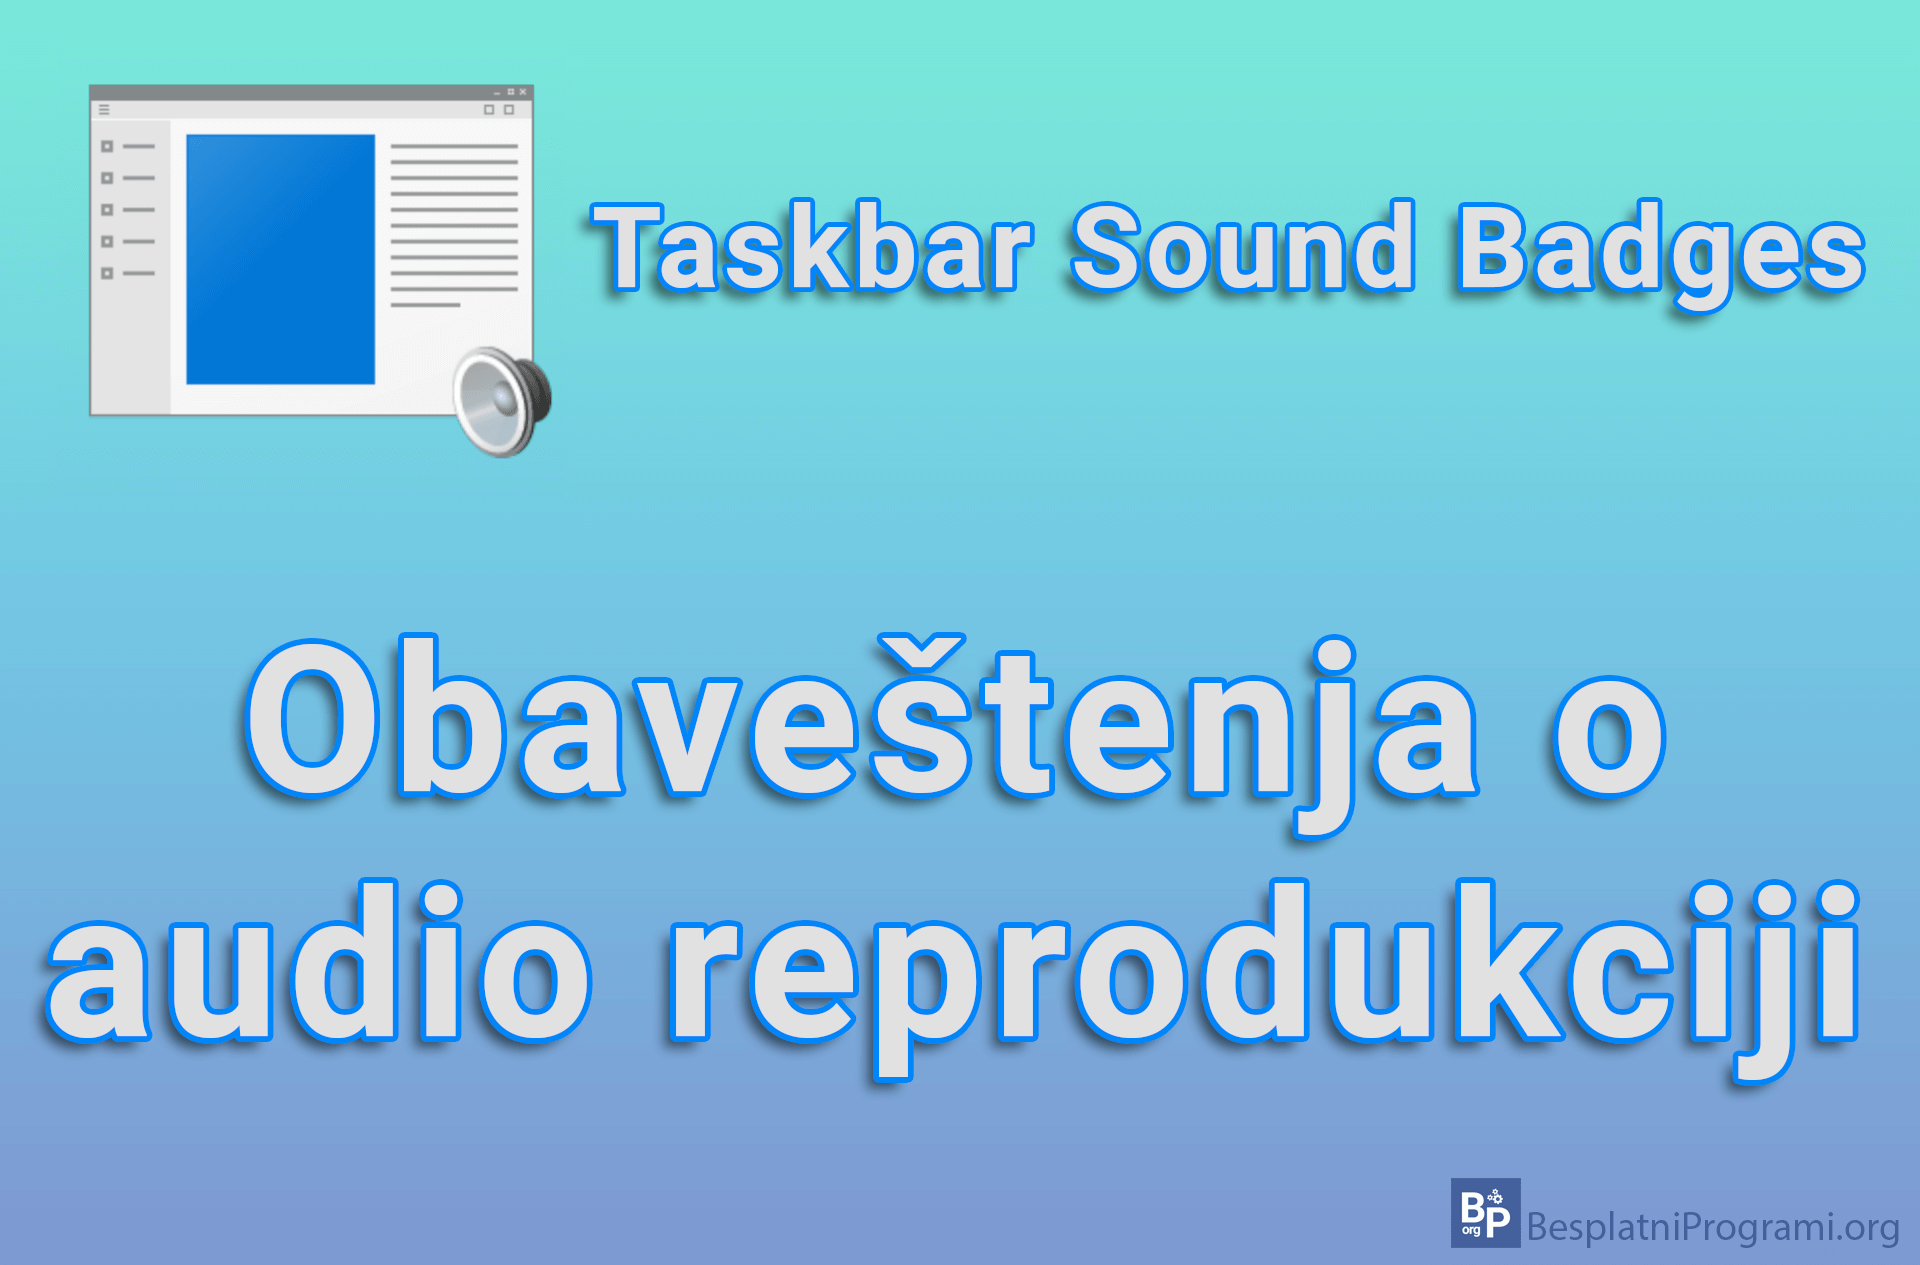 Taskbar Sound Badges - Obaveštenja o audio reprodukciji